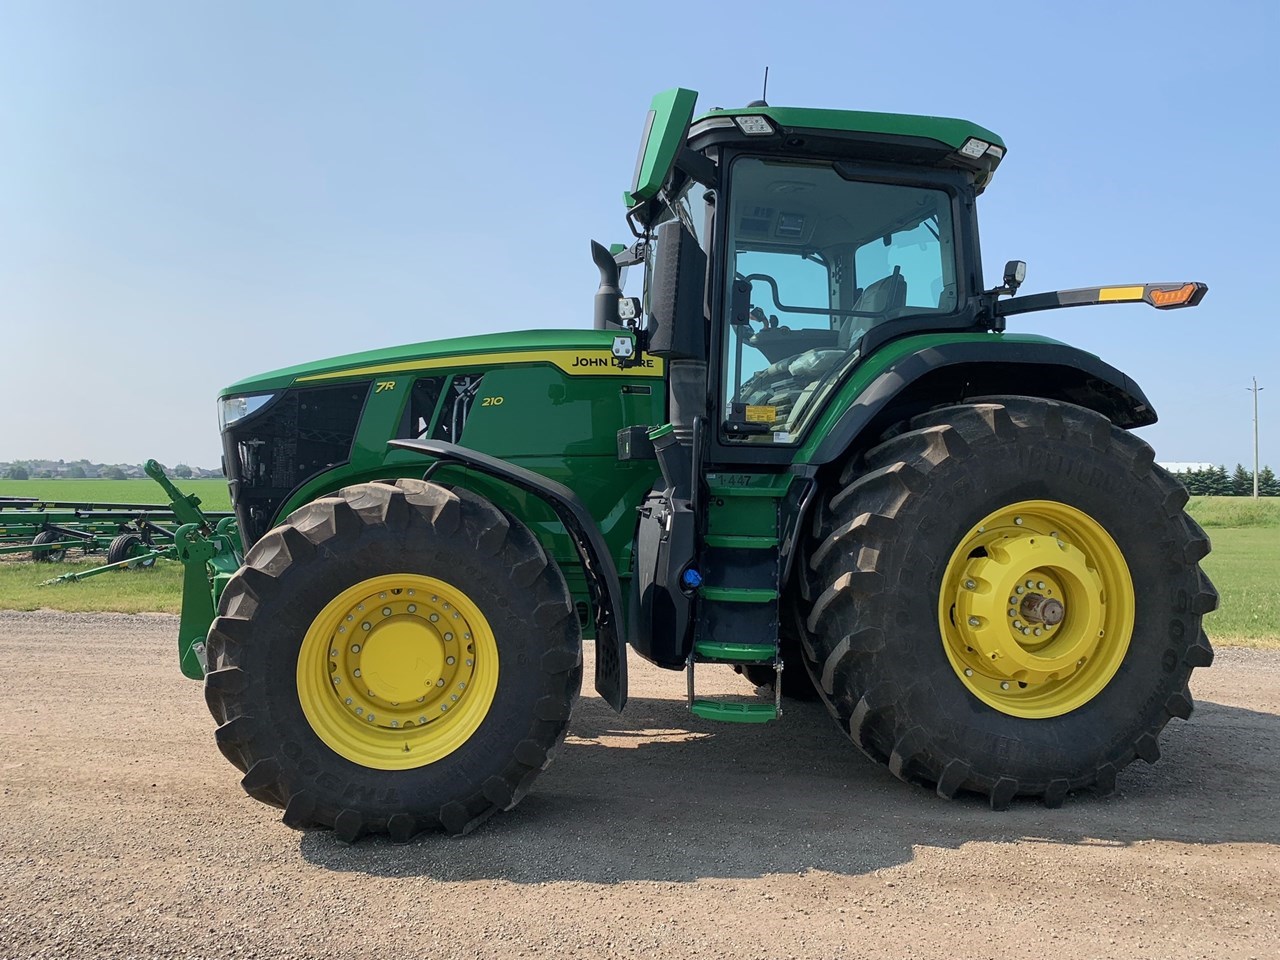 2022 John Deere 7r 210 Tractor Row Crop For Sale In Alliston Ontario